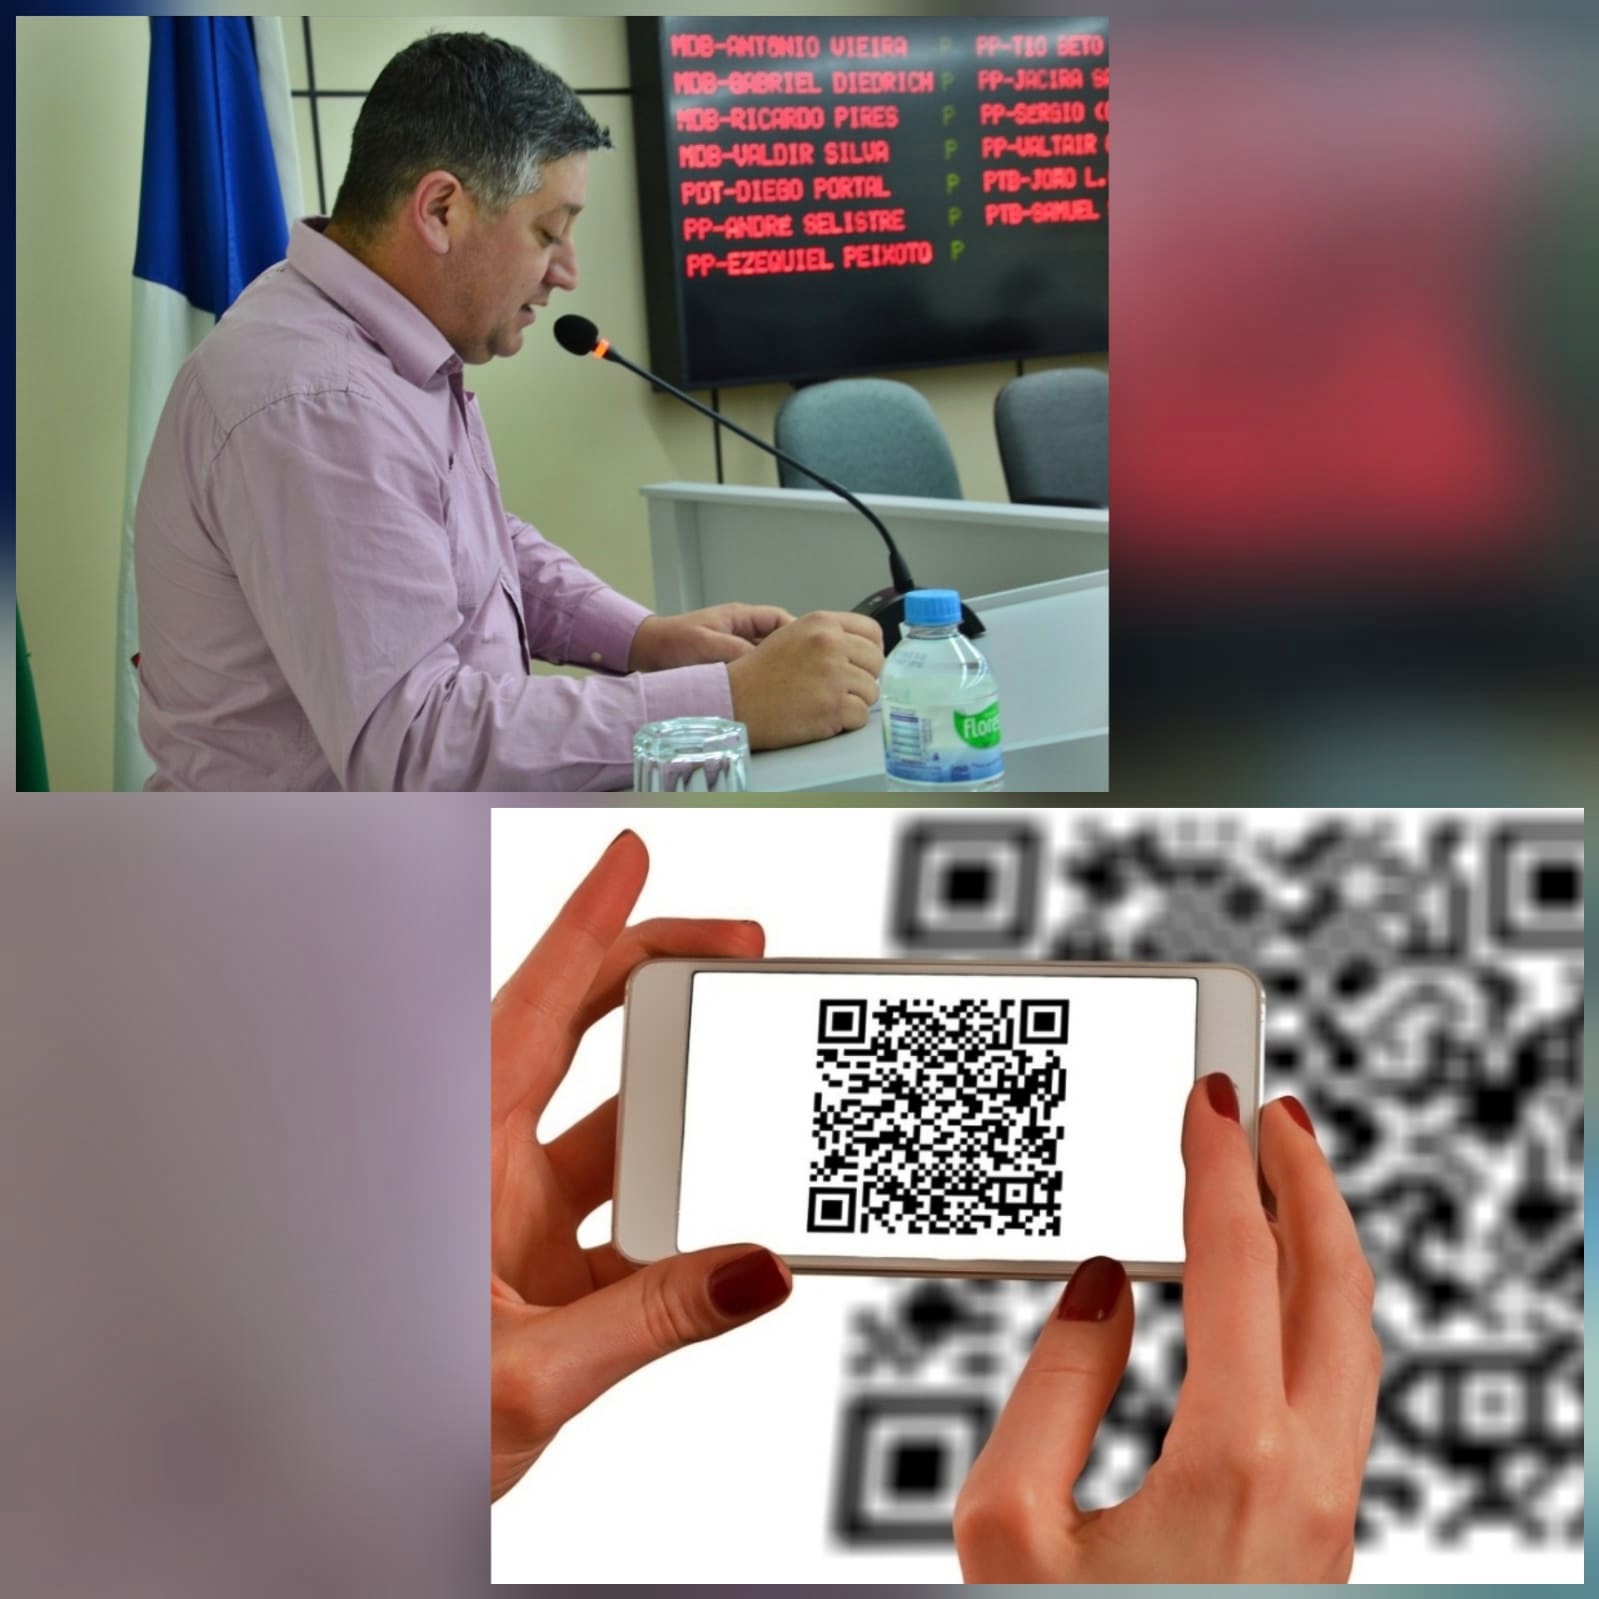 Diego propõe criar sistema de “QR Code” para informações turísticas em Santo Antônio